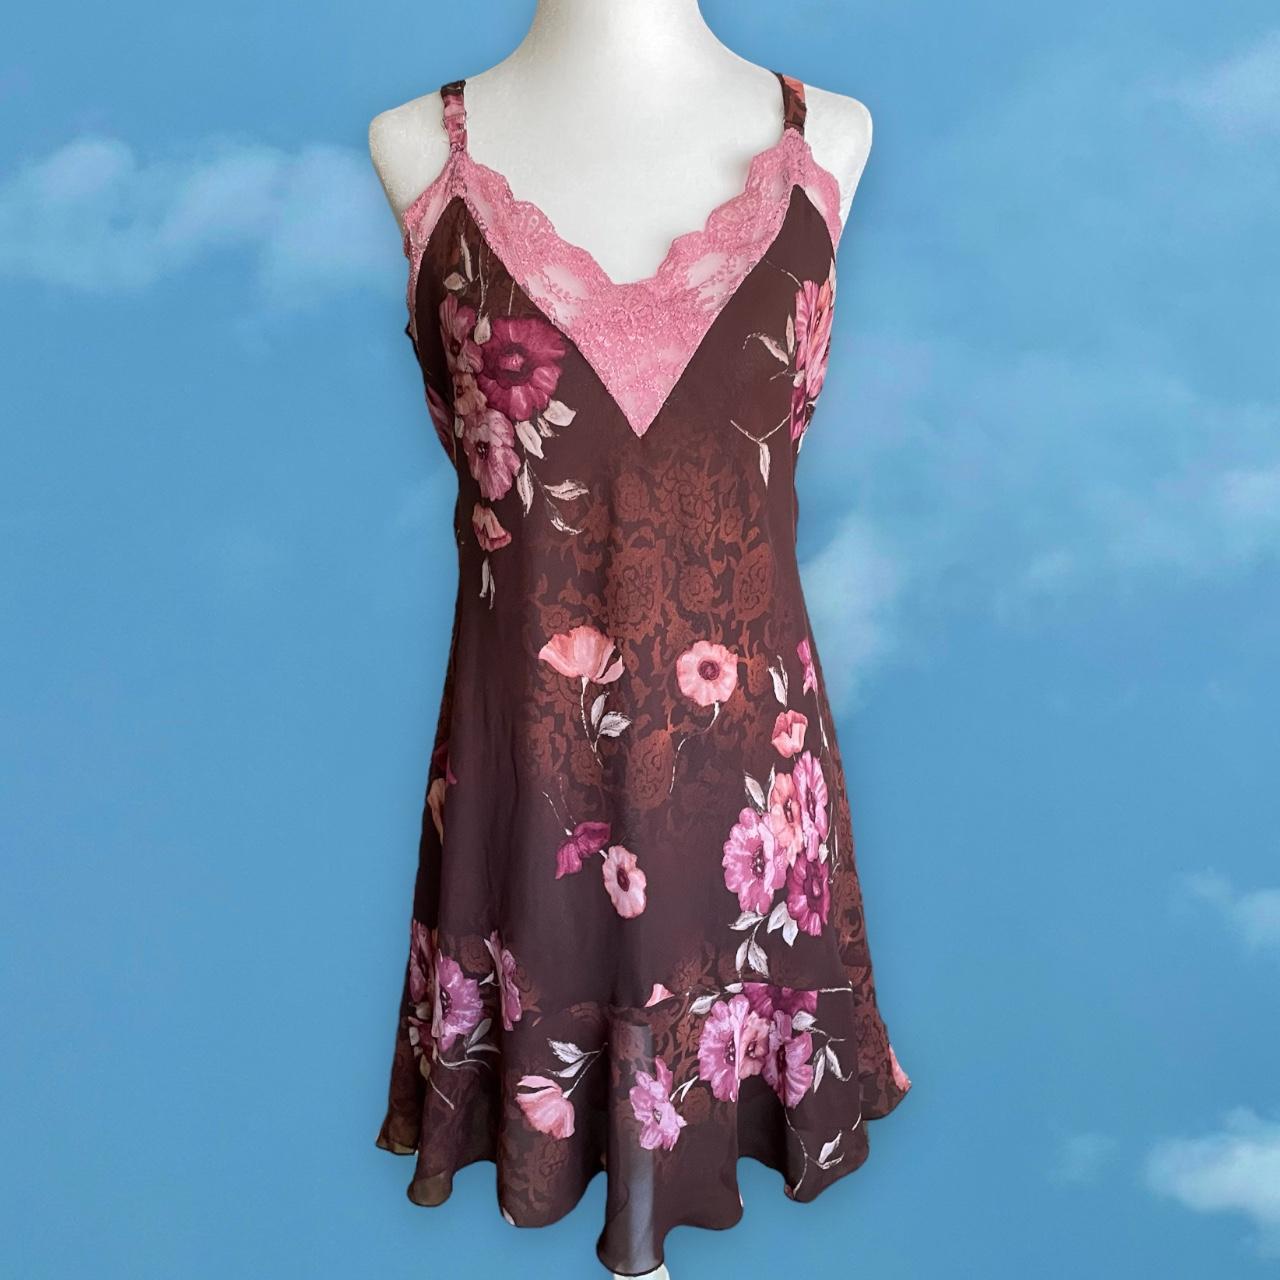 Product Image 1 - Vintage Floral Slip Dress 
brand: